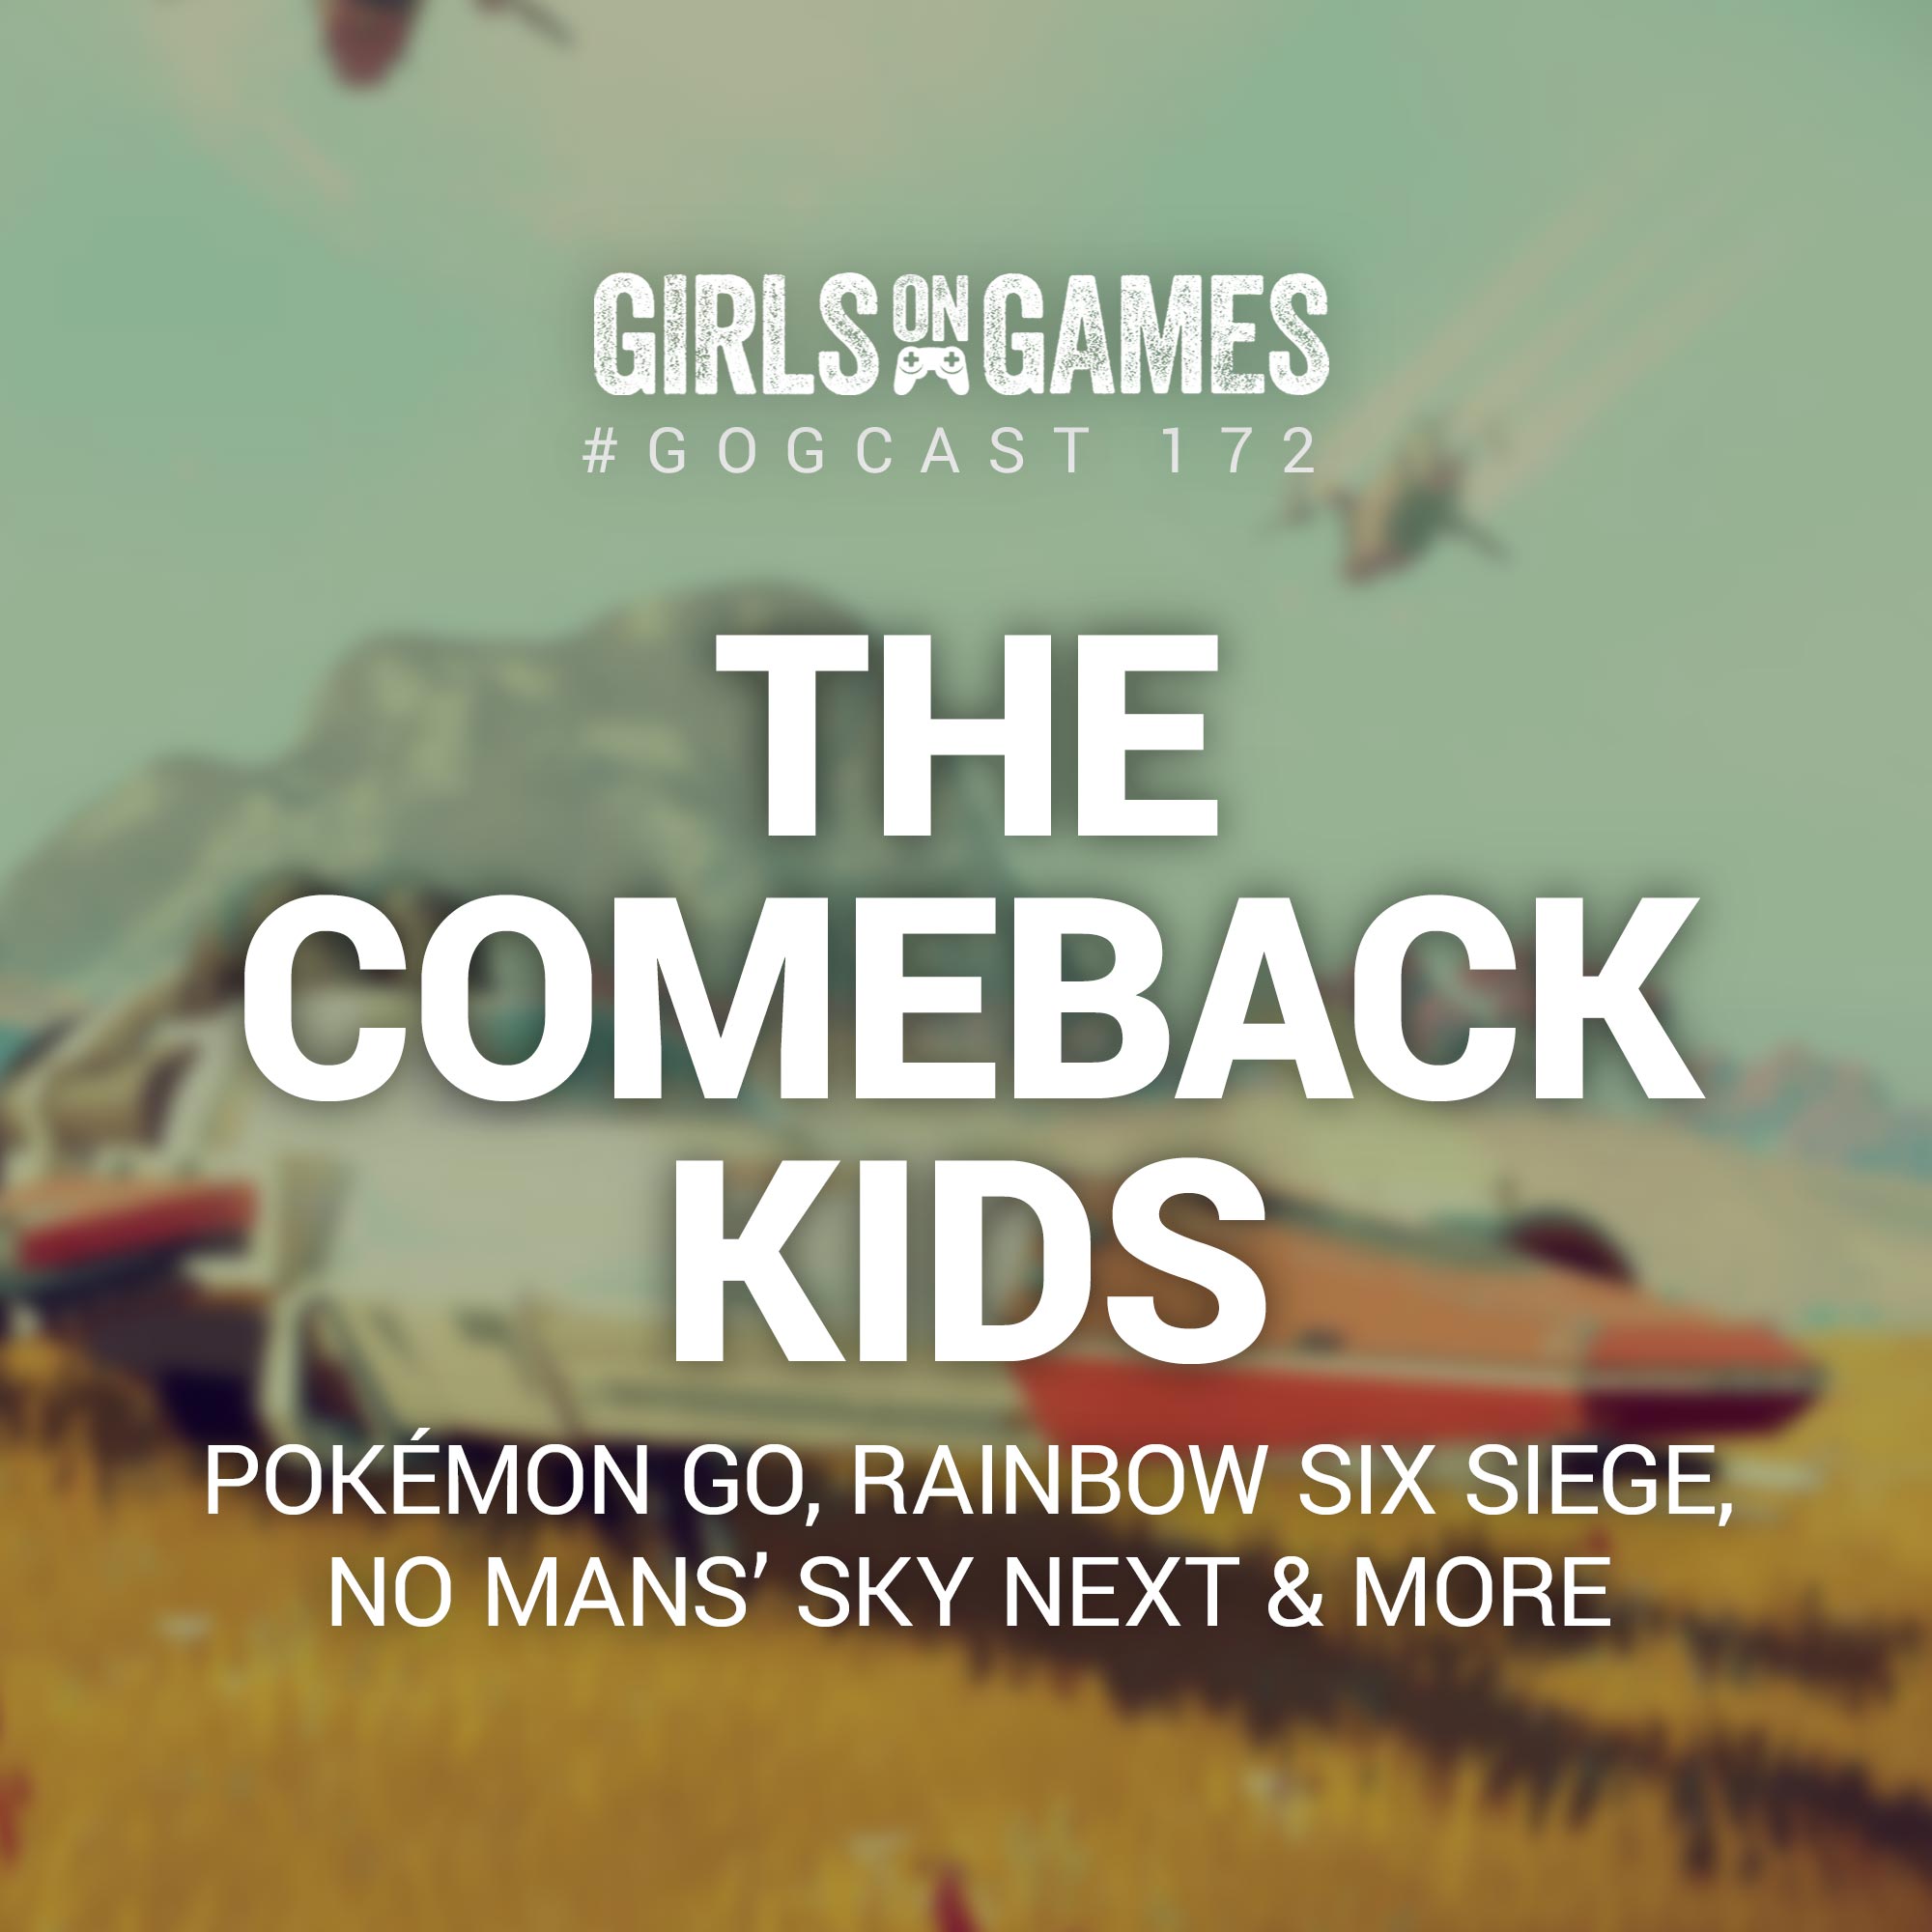 GoGCast 172: The Comeback Kids - No Man’s Sky Next, Rainbow Six Siege, Pokémon Go